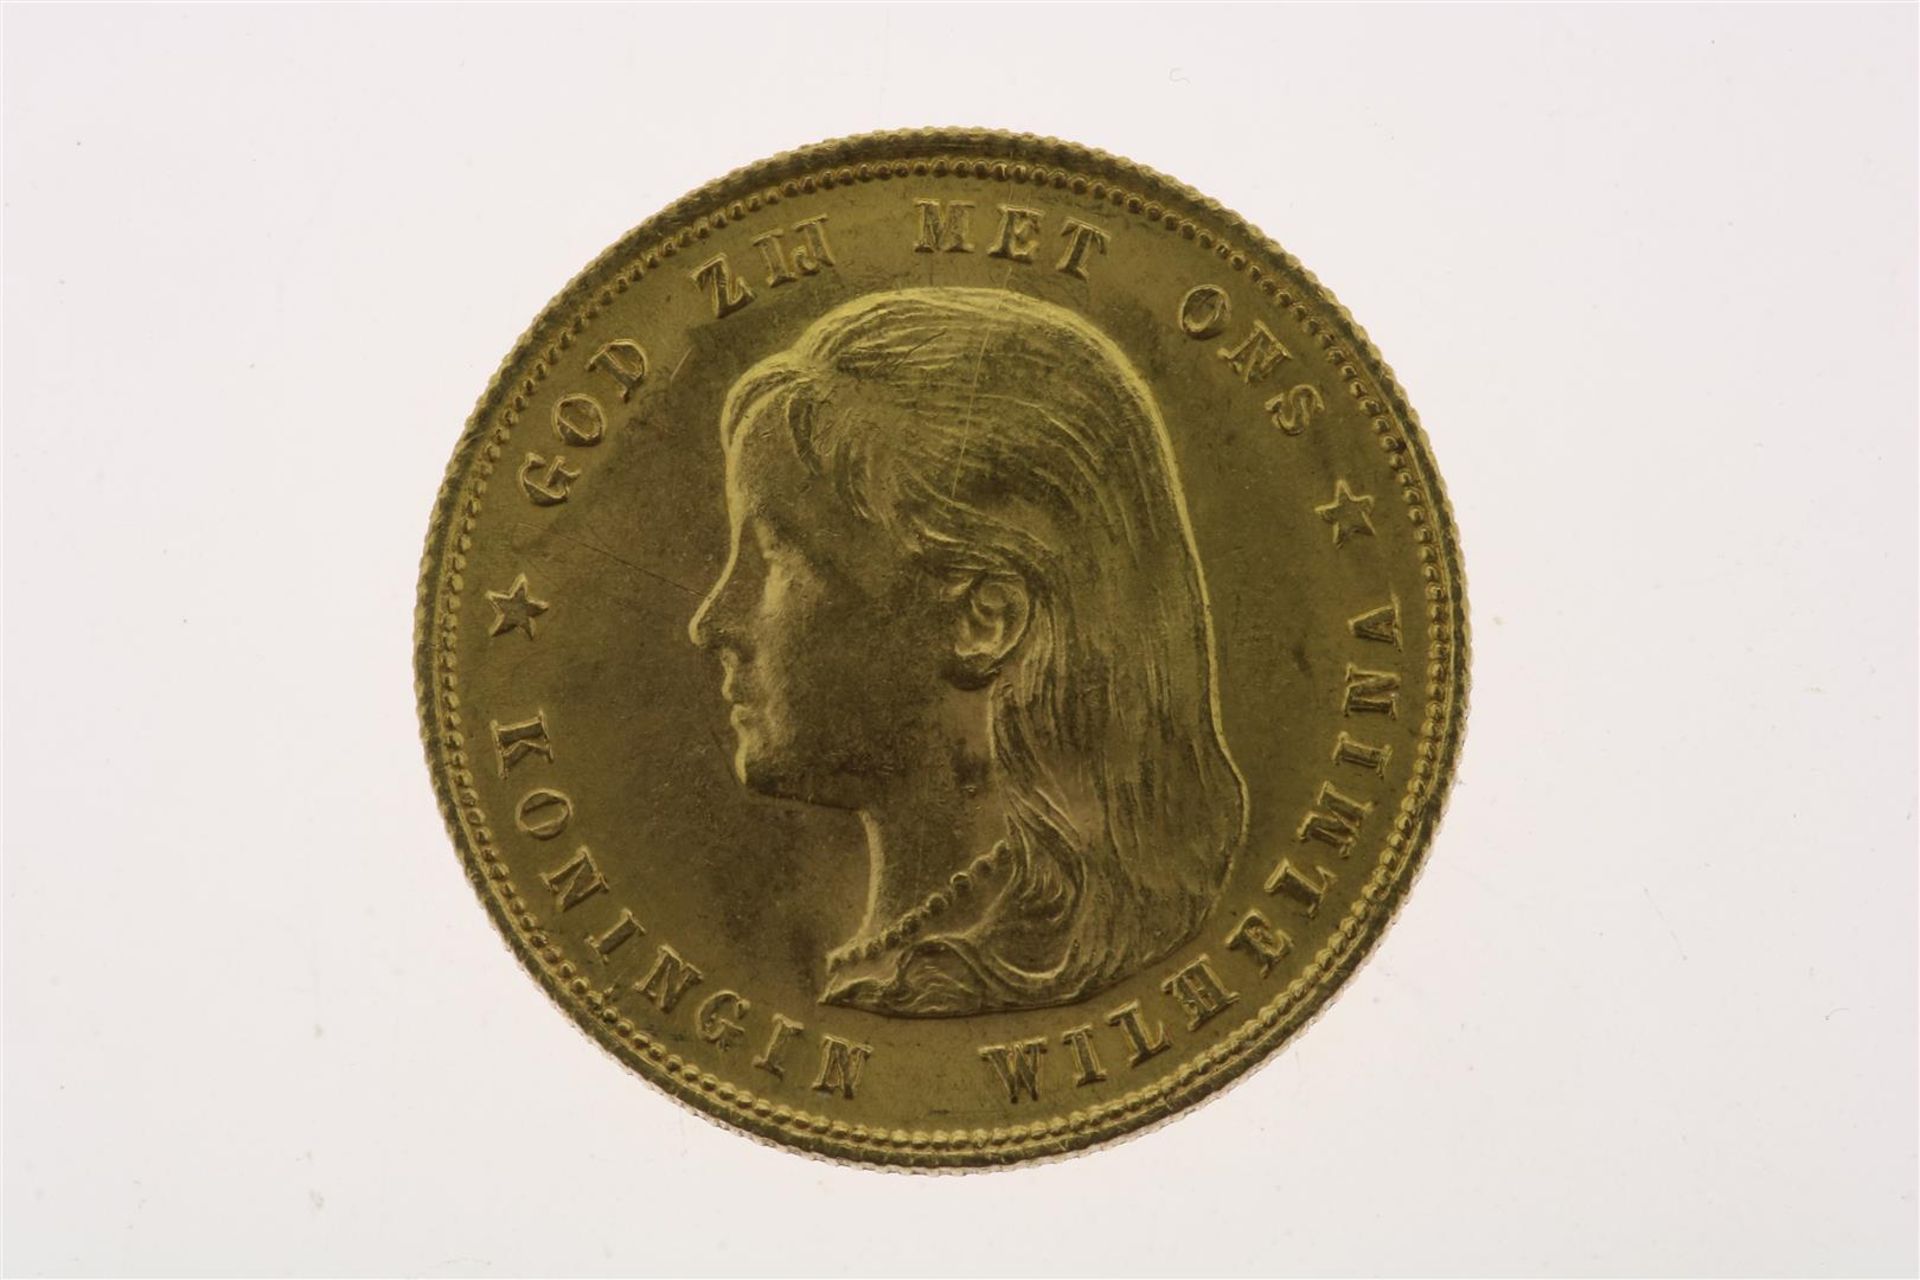 Golden 'tientje' coin, Wilhelmina 